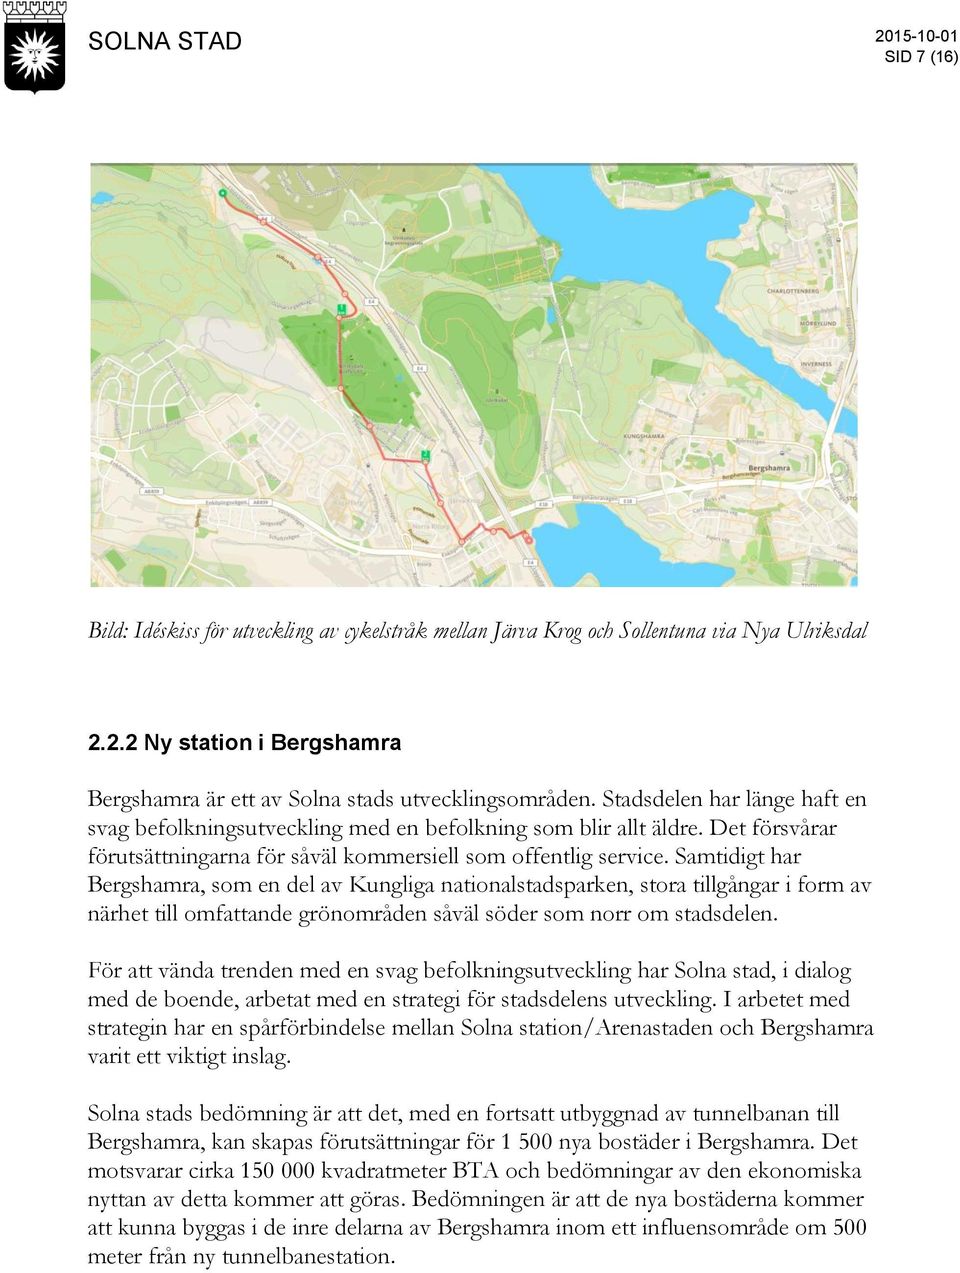 Samtidigt har Bergshamra, som en del av Kungliga nationalstadsparken, stora tillgångar i form av närhet till omfattande grönområden såväl söder som norr om stadsdelen.